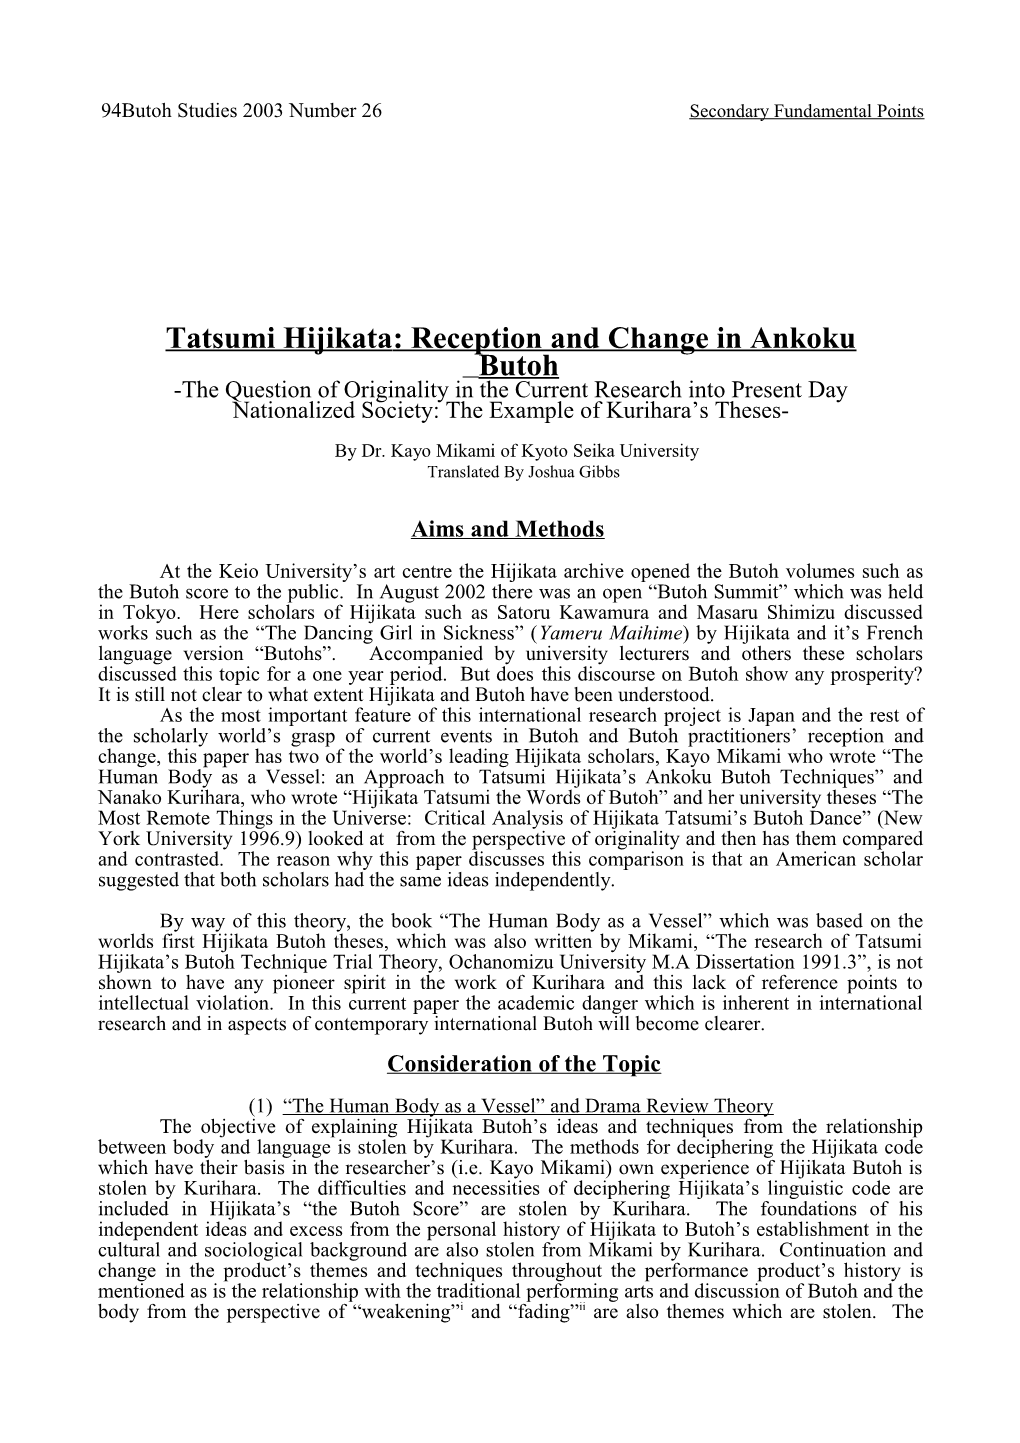 Tatsumi Hjikata and Reception and Change in Ankoku Butoh